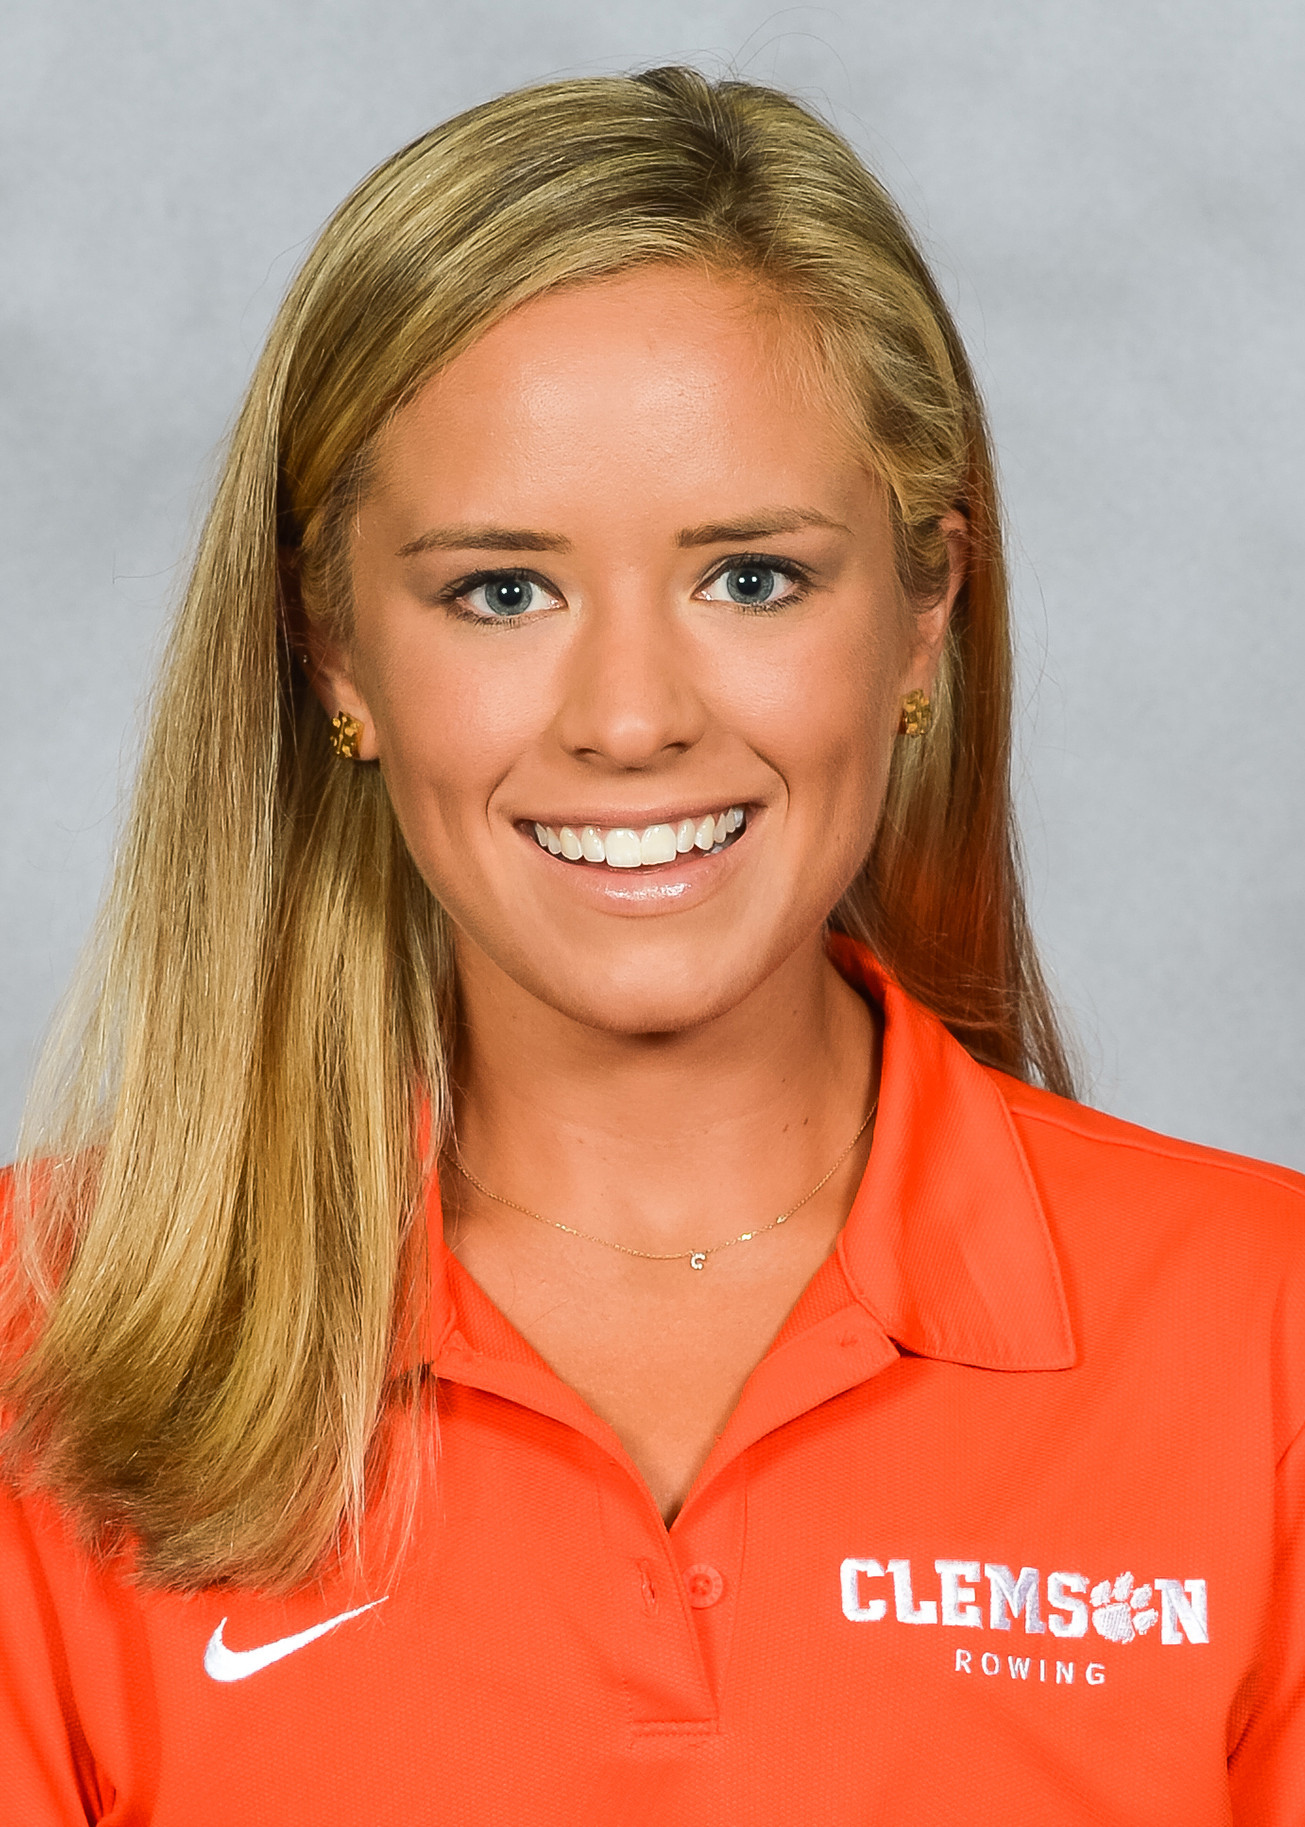 Claire Prevost - Rowing - Clemson University Athletics